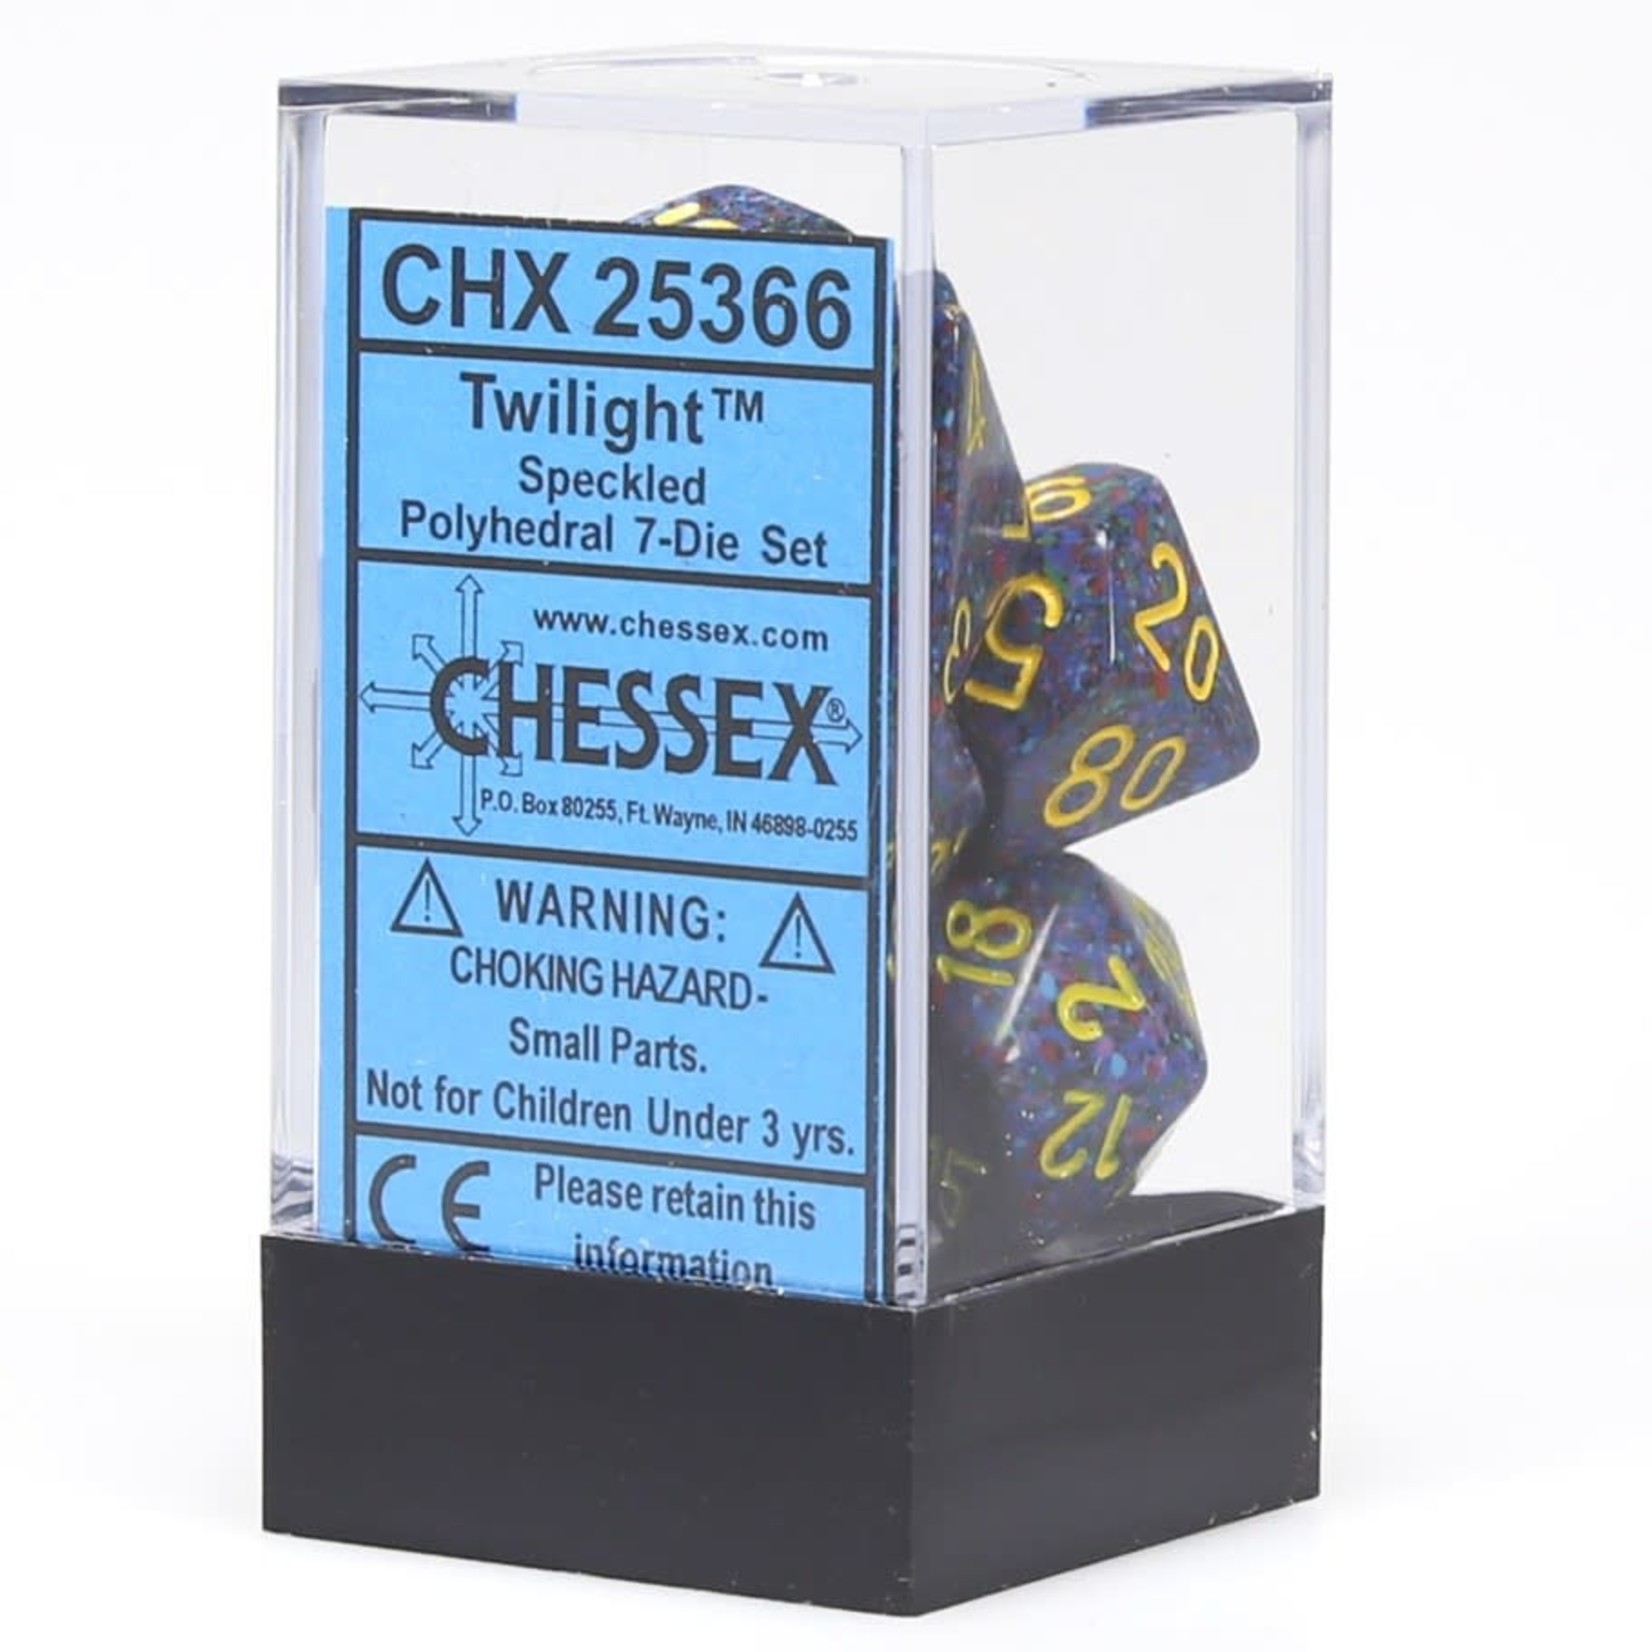 Chessex Speckled Polyhedral 7-Die Set: Twilight